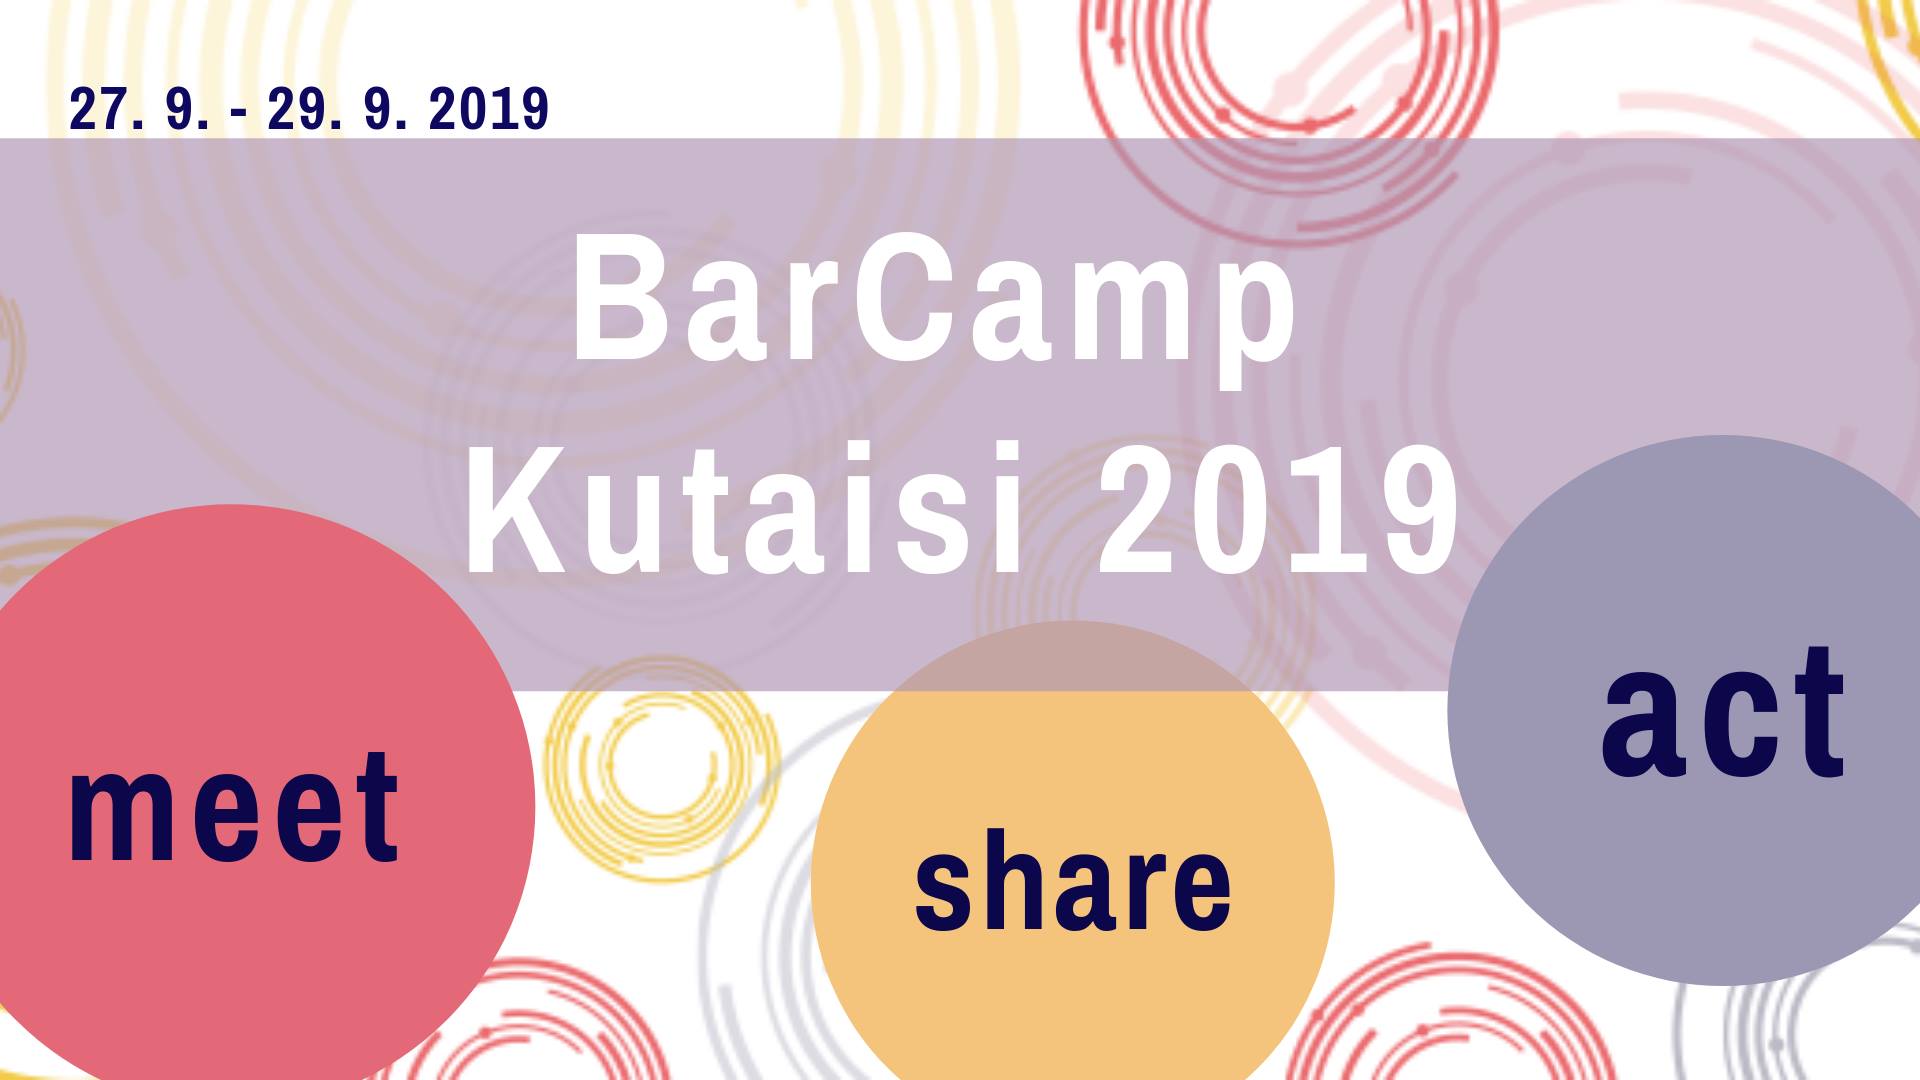 V Gruzii začíná mezinárodní BarCamp